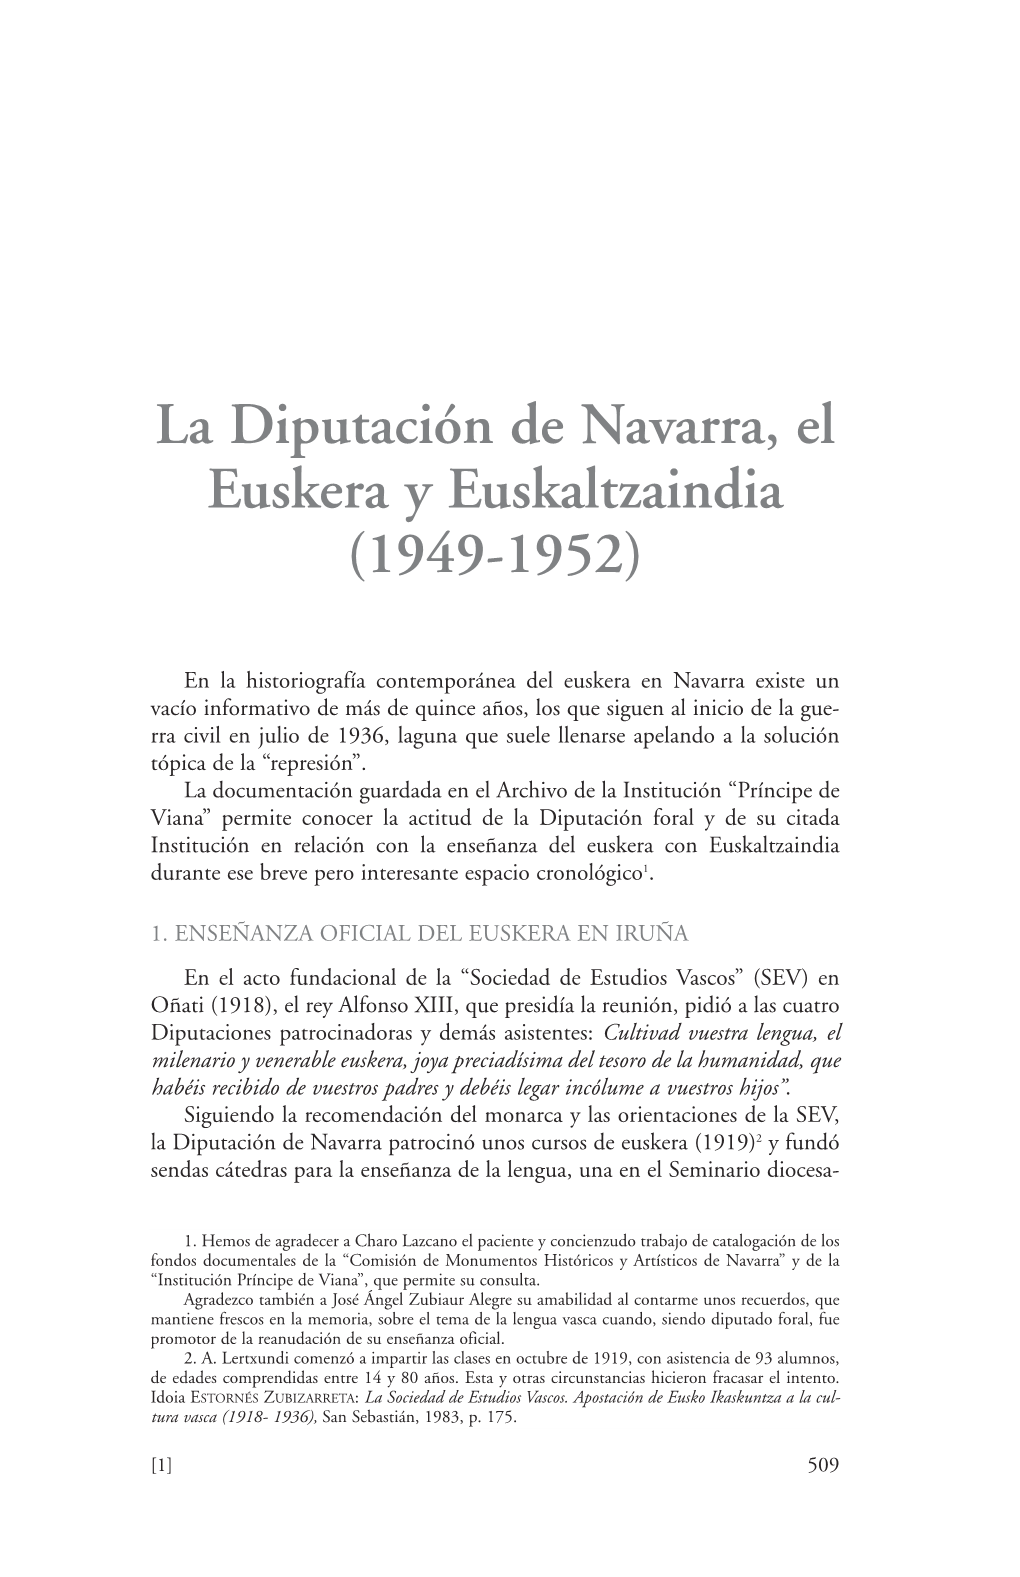 La Diputación De Navarra, El Euskera Y Euskaltzaindia (1949-1952)